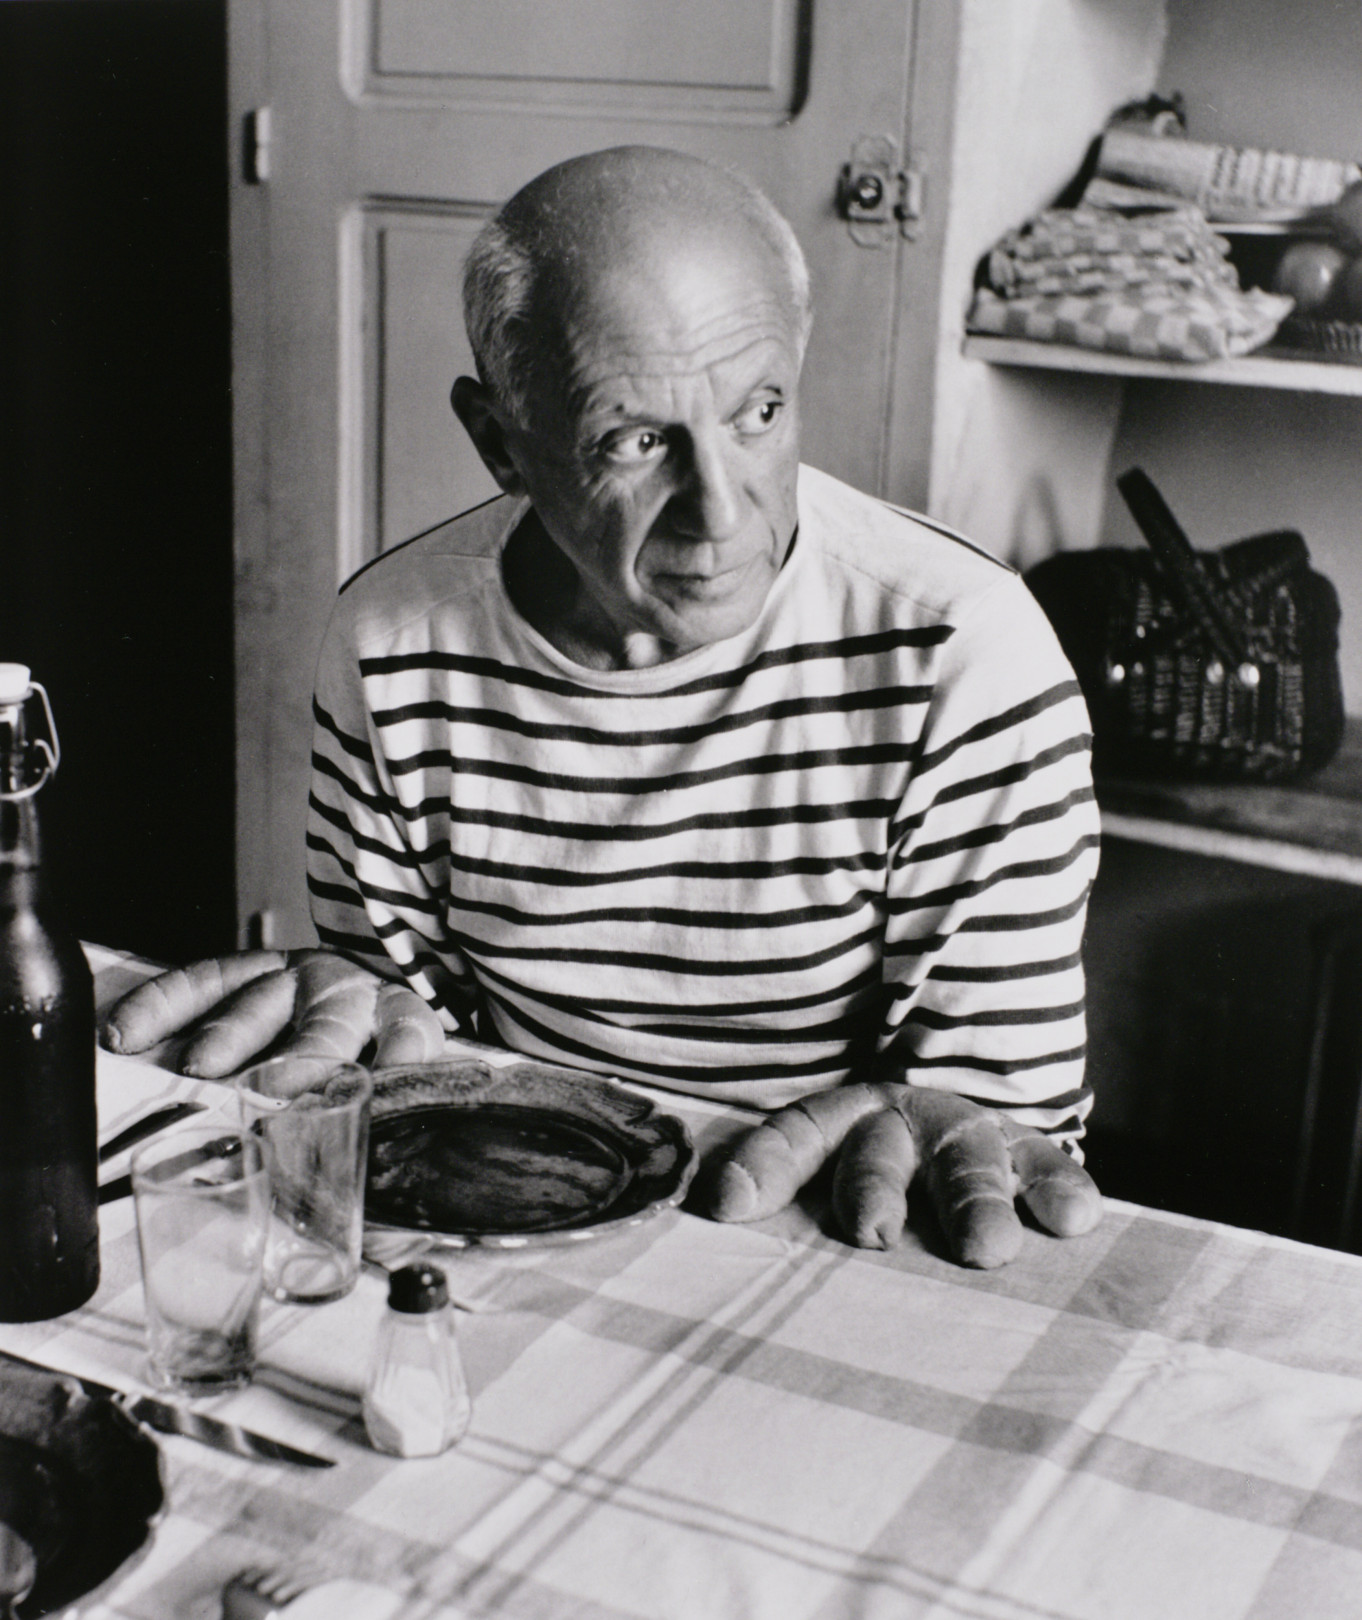 ロベール・ドアノー 《ピカソのパン》 1952年 ゼラチン・シルバー・プリント